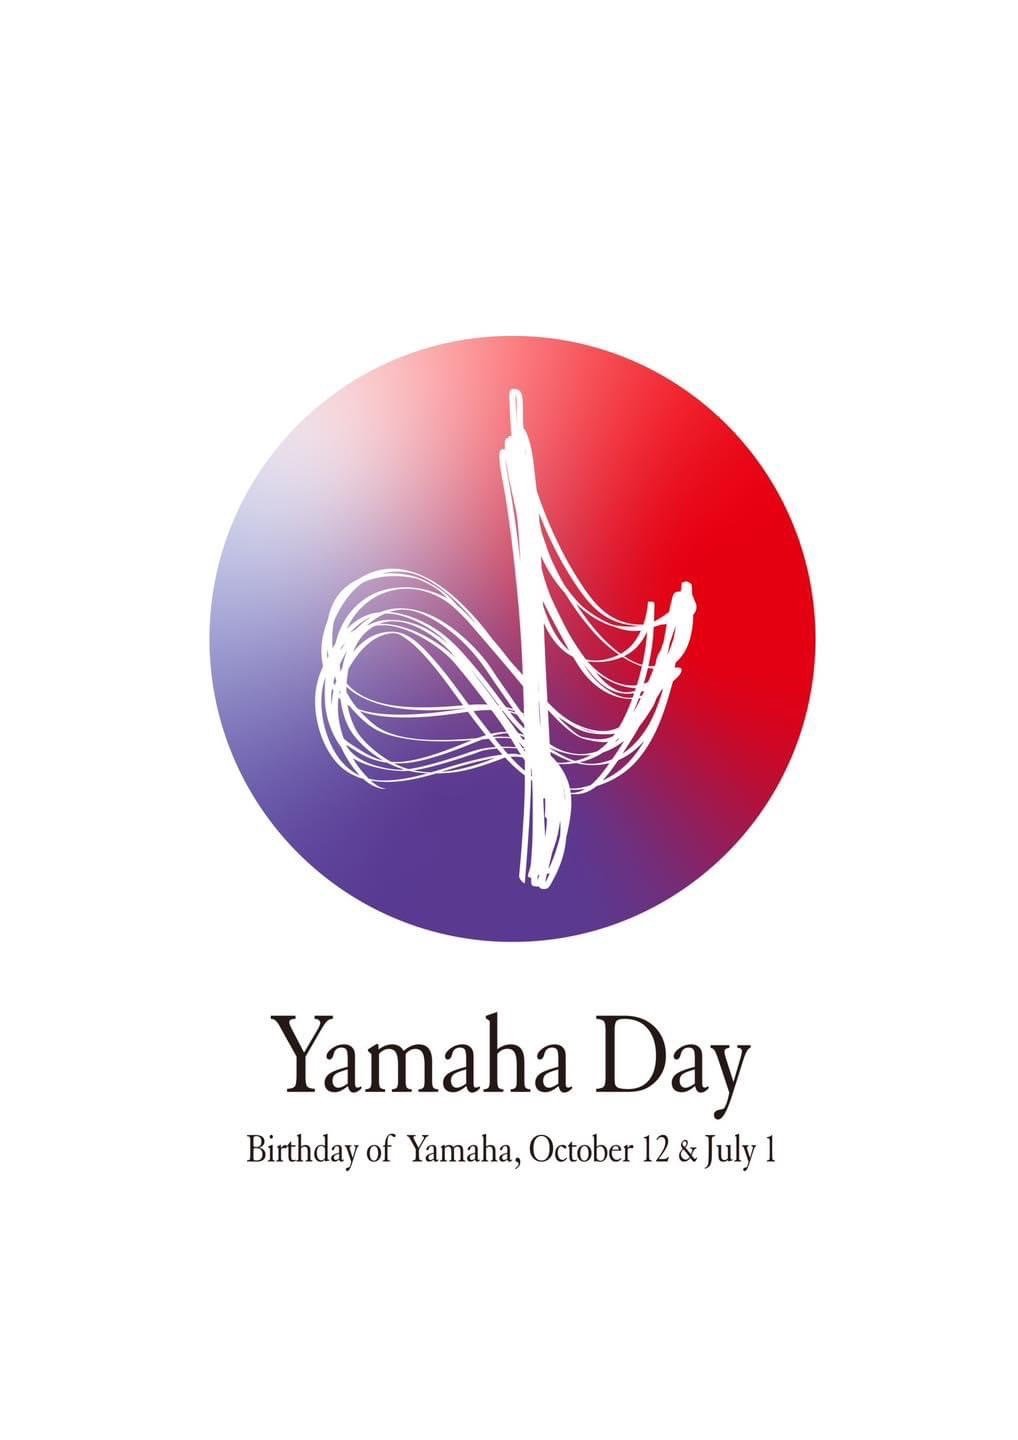 “1 กรกฎาคม ค.ศ. 1955 คือวันก่อตั้ง ยามาฮ่า มอเตอร์ ซึ่งปีนี้ ครบรอบการดำเนินธุรกิจเป็นเวลา 68 ปี